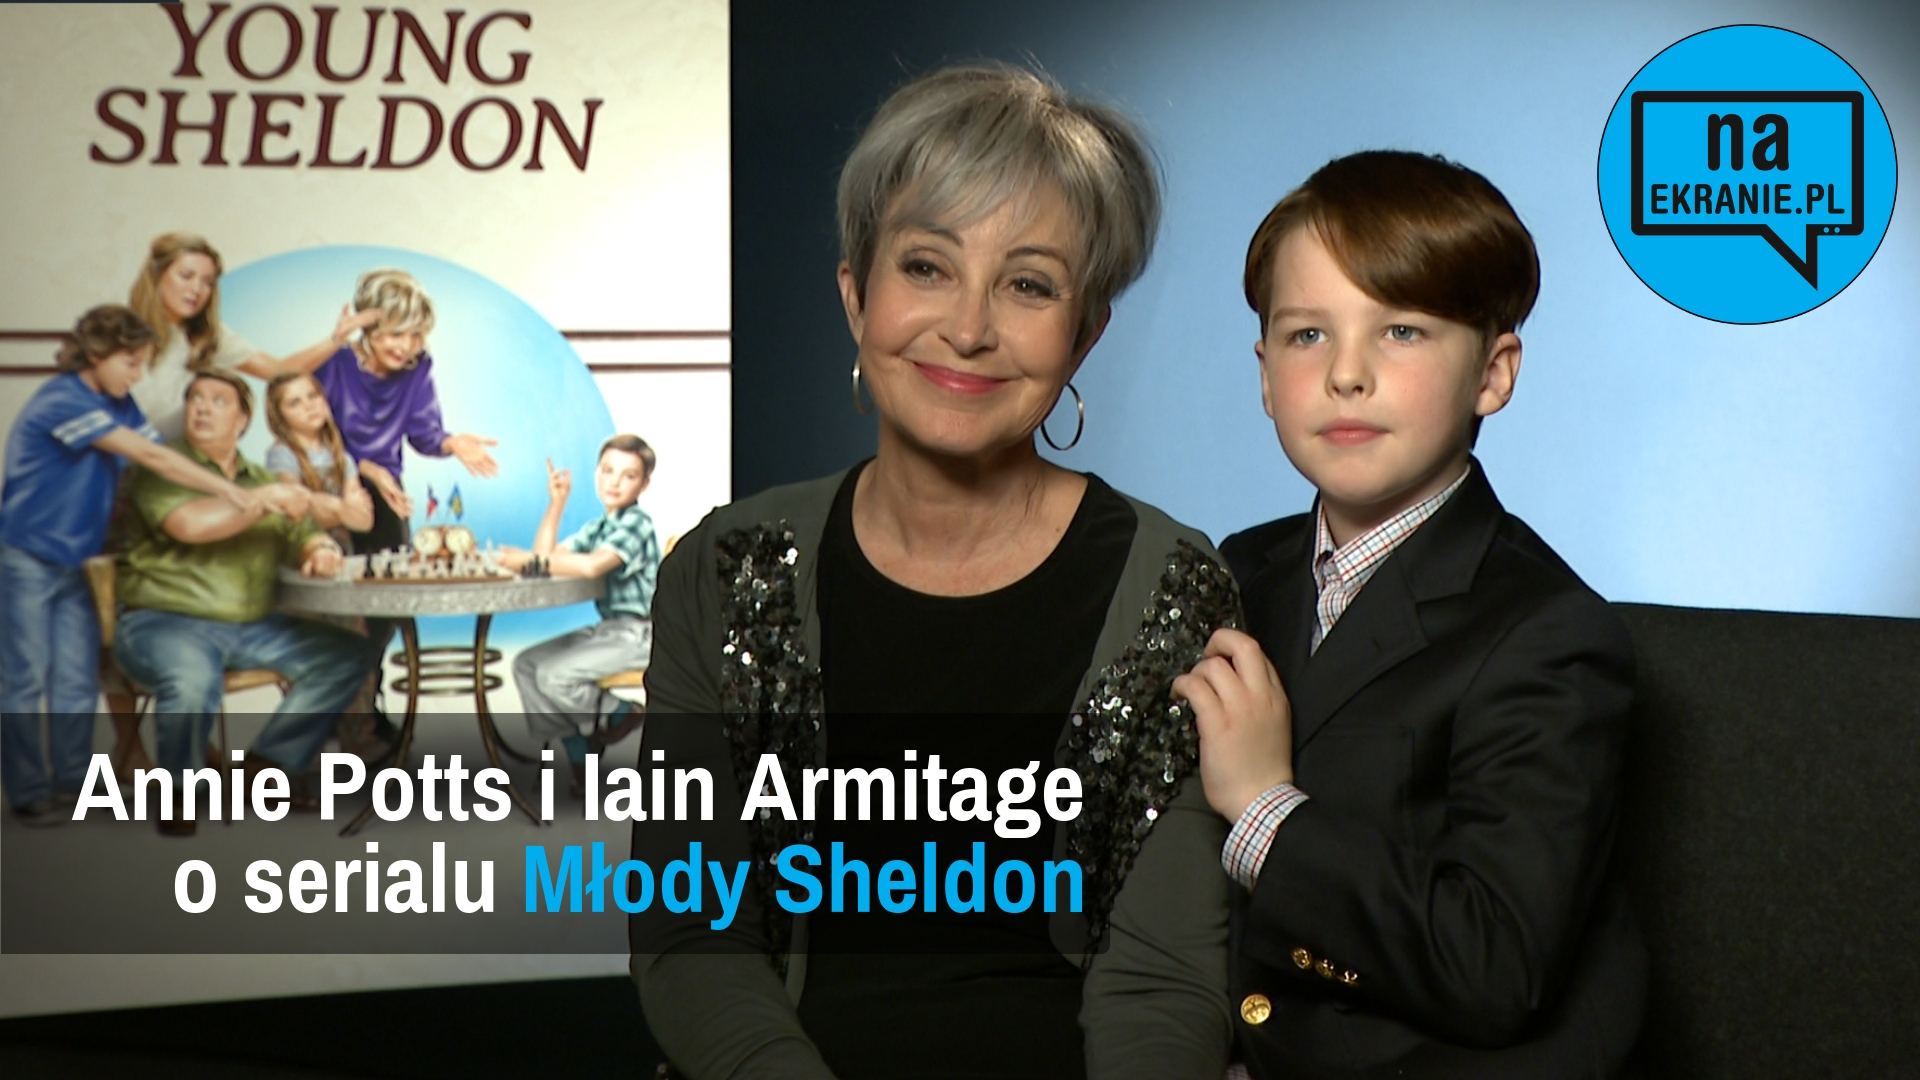 Iain Armitage i Annie Potts opowiadają o Młodym Sheldonie [WYWIAD VIDEO]